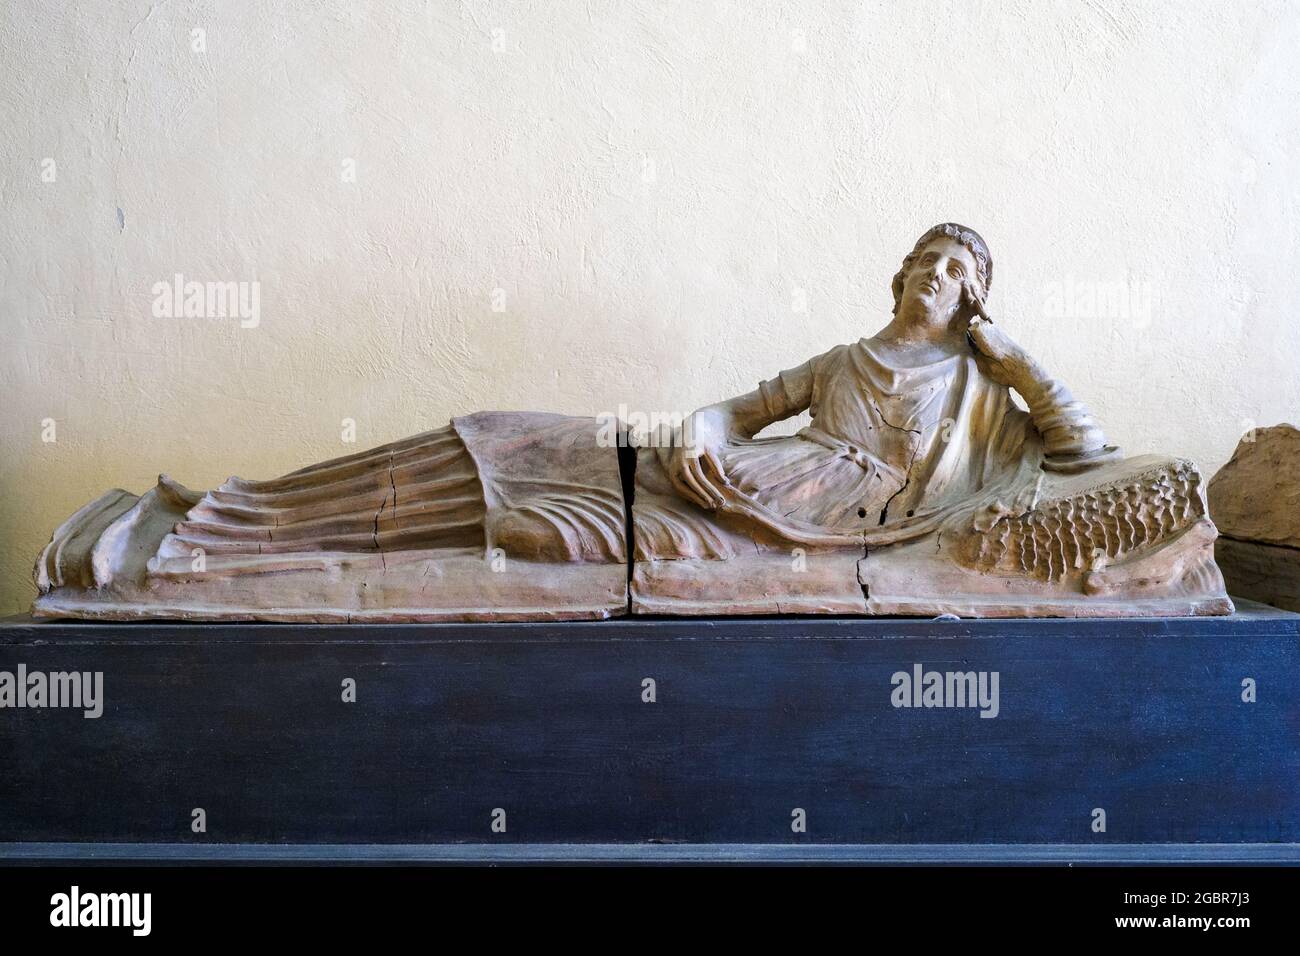 Sarcophage étrusque - Musée archéologique national de Tarquinia, Italie Banque D'Images